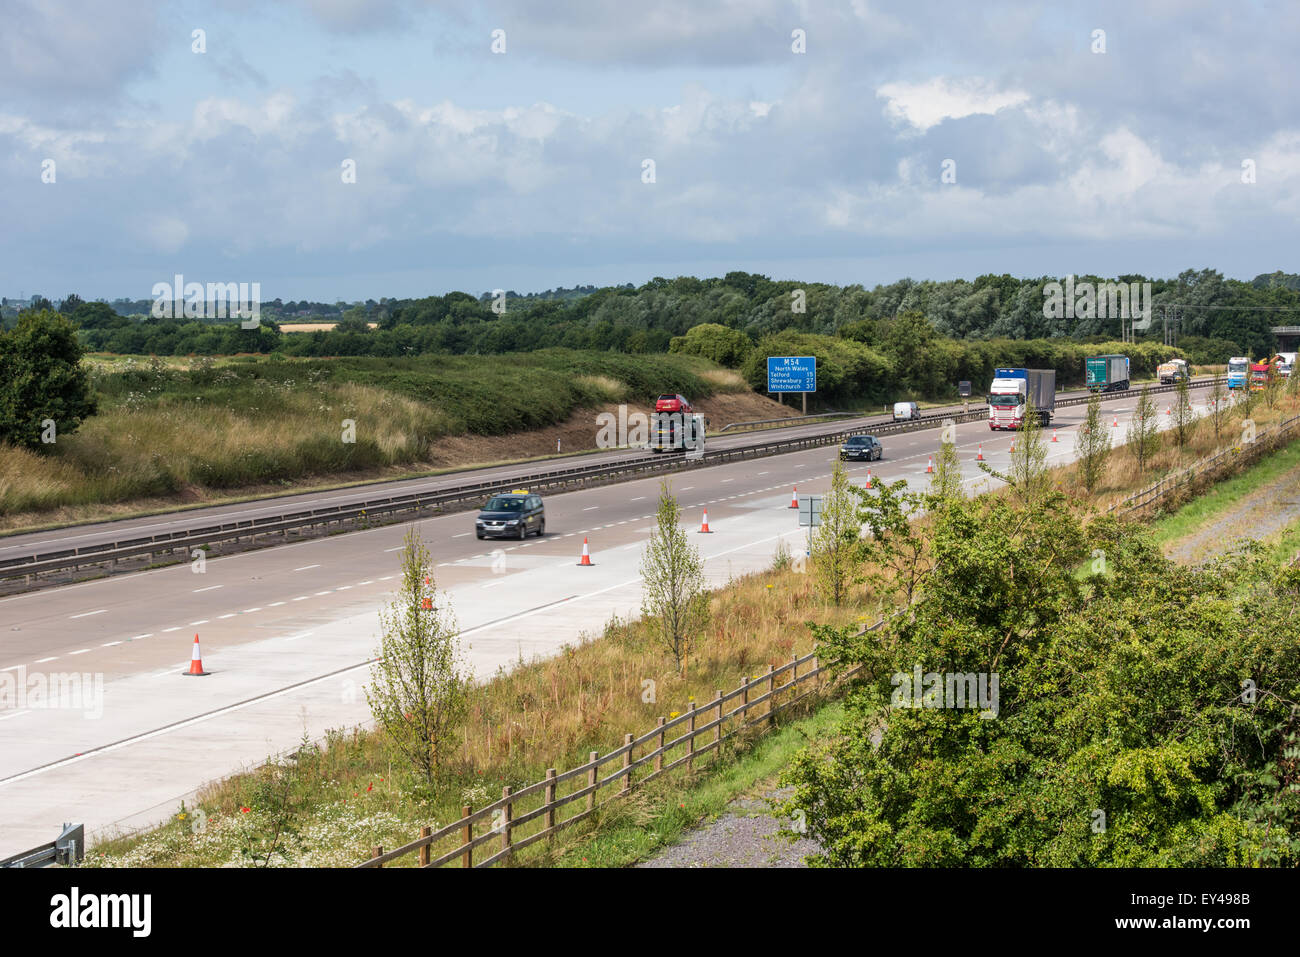 M54 motorway running through shropshire 20th july 2015 uk Stock Photo